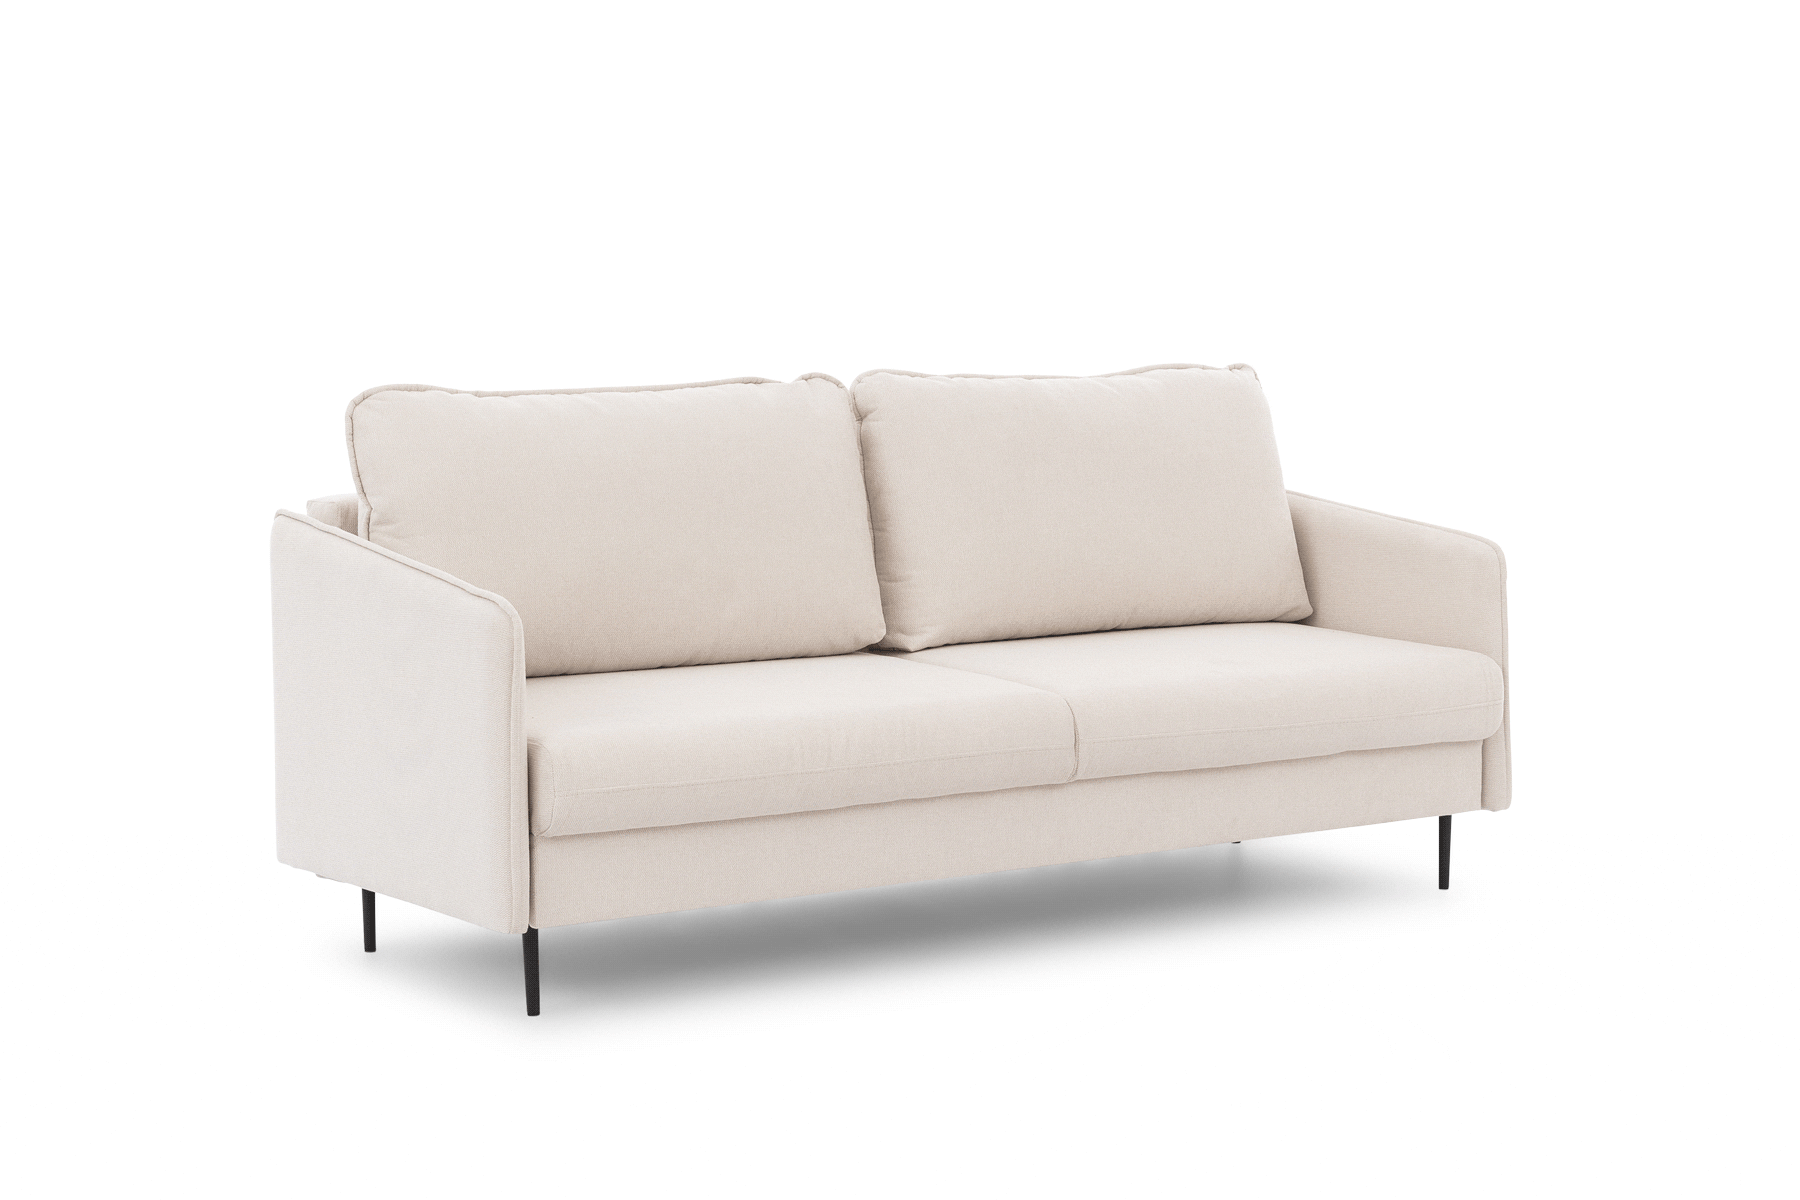 Taila kinyitható kanapé - Velutto 15, fekete lábak Taila kinyitható kanapé